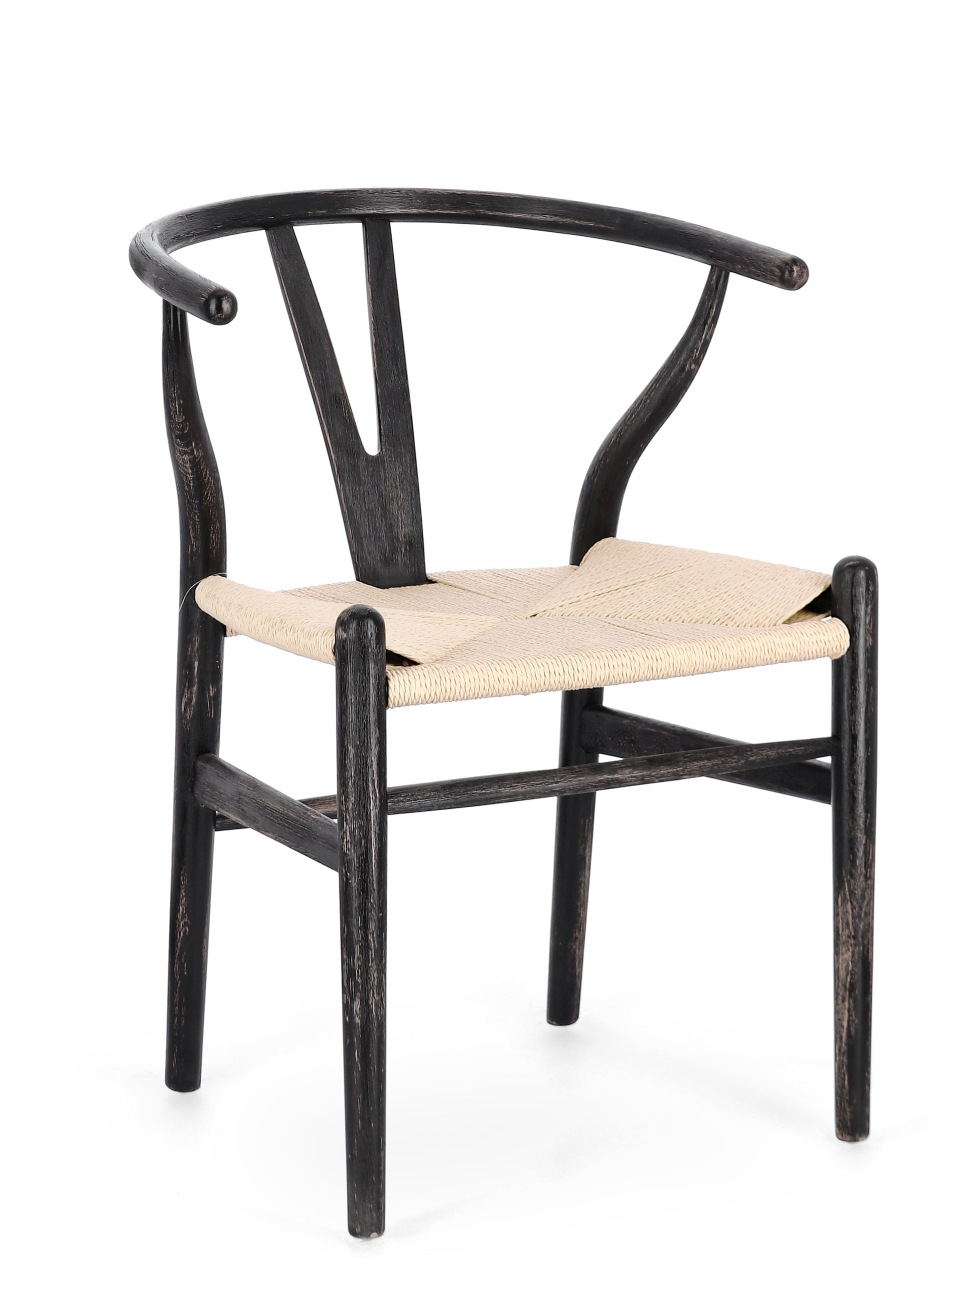 Der Esszimmerstuhl Artas überzeugt mit seinem modernen Stil. Gefertigt wurde er aus Seilen, welche einen natürlichen Farbton besitzt. Das Gestell ist aus Buchenholz und hat ein schwarze Farbe. Der Stuhl besitzt eine Sitzhöhe von 48 cm.